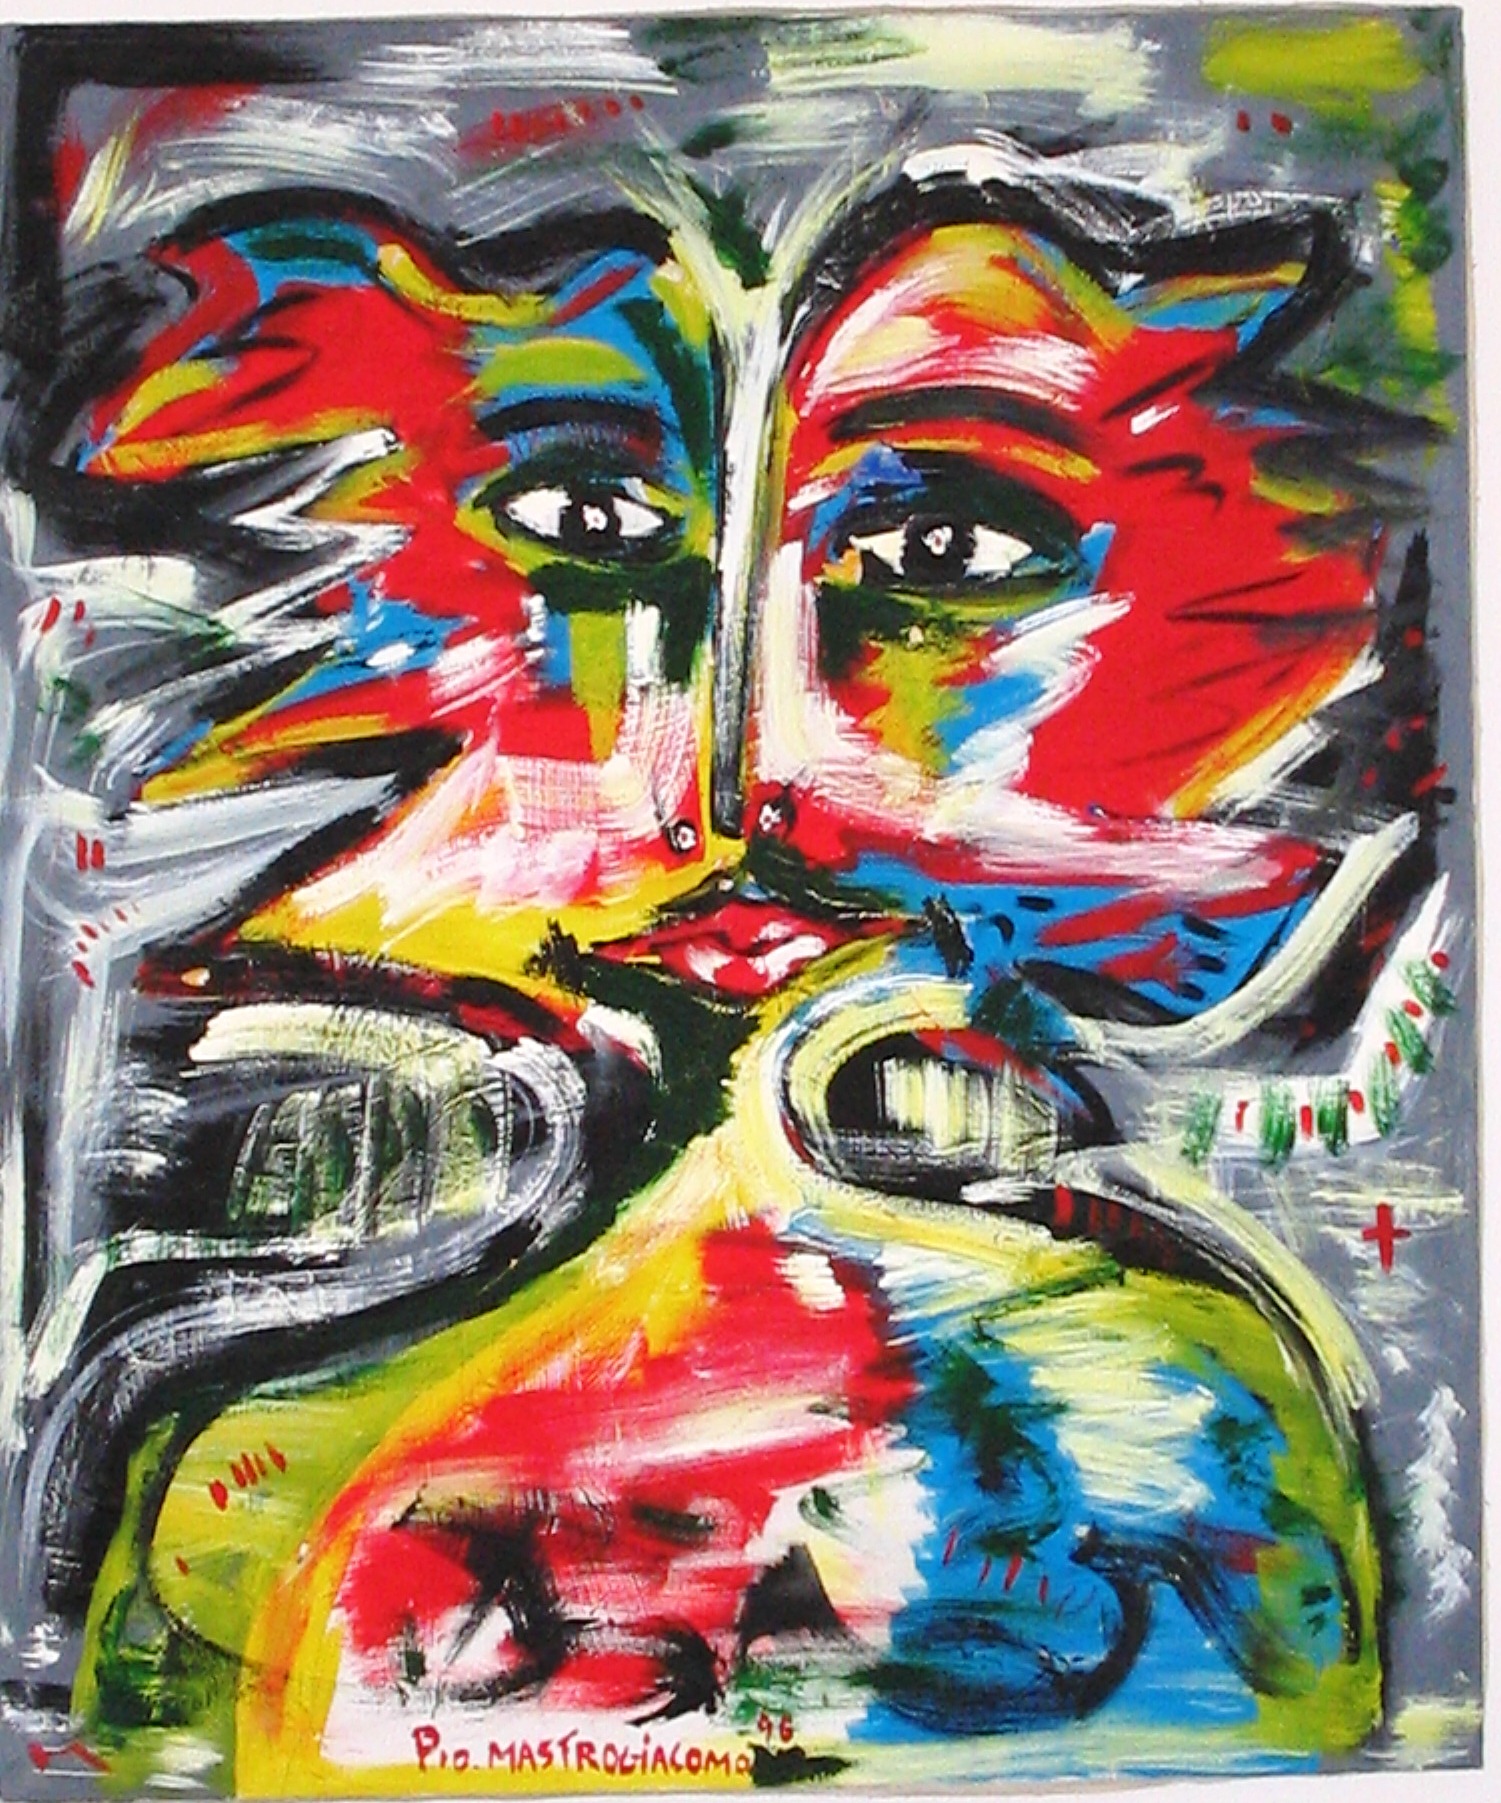 Volto di donna (Woman face), 1996 dipinto acrilico su tela (painting acrylic on canvas) cm 100x100, Pio Mastrogiacomo, Acerno (SA).